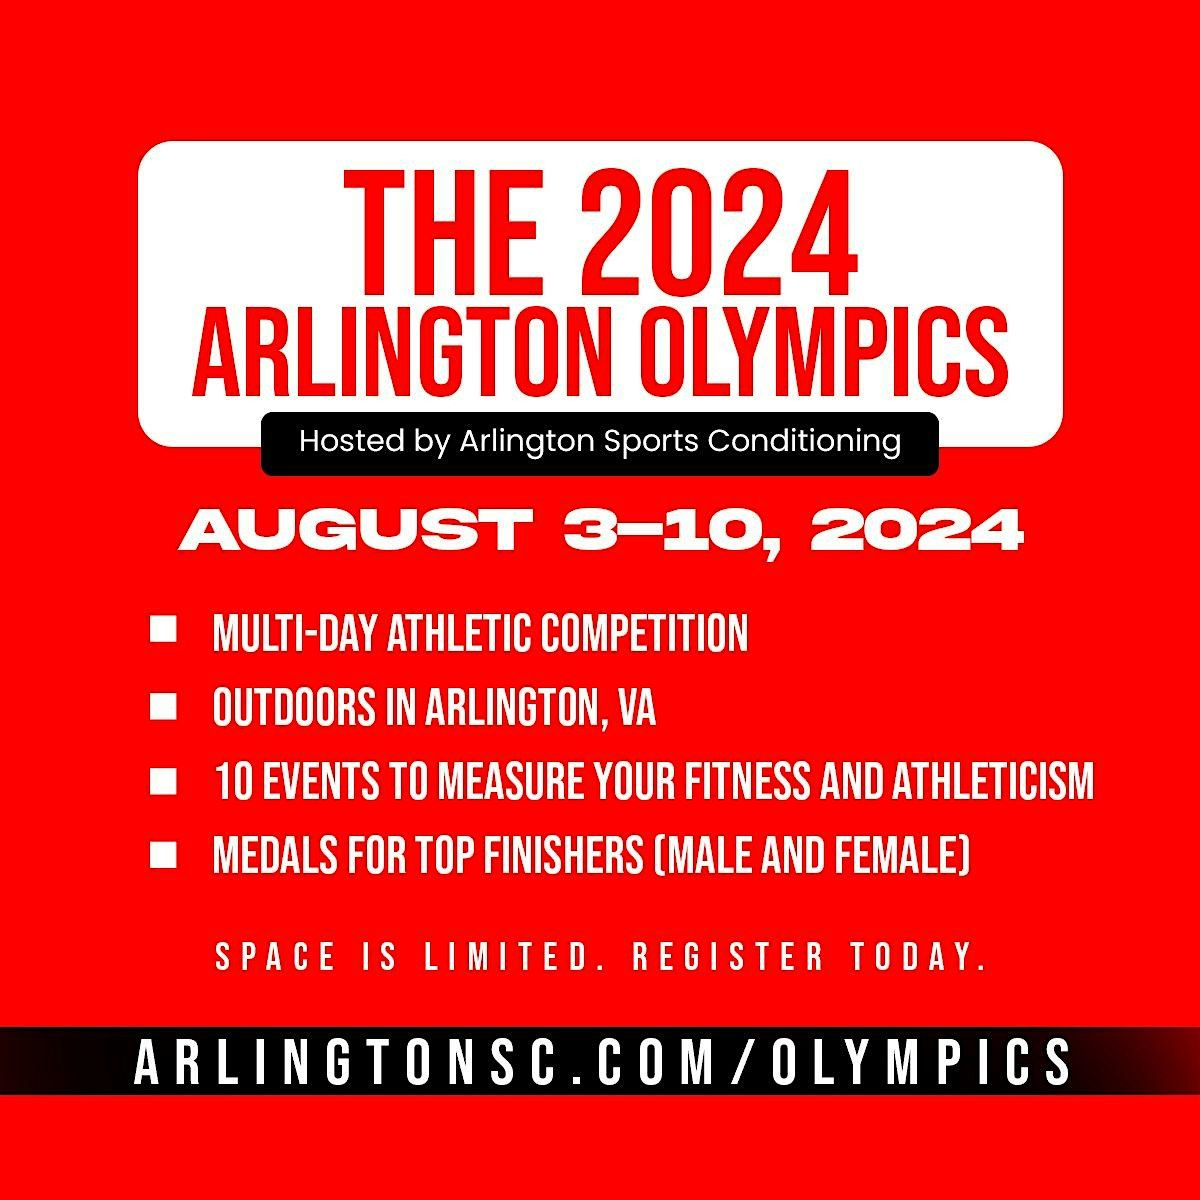 The 2024 Arlington Olympics: Day 1 of 5